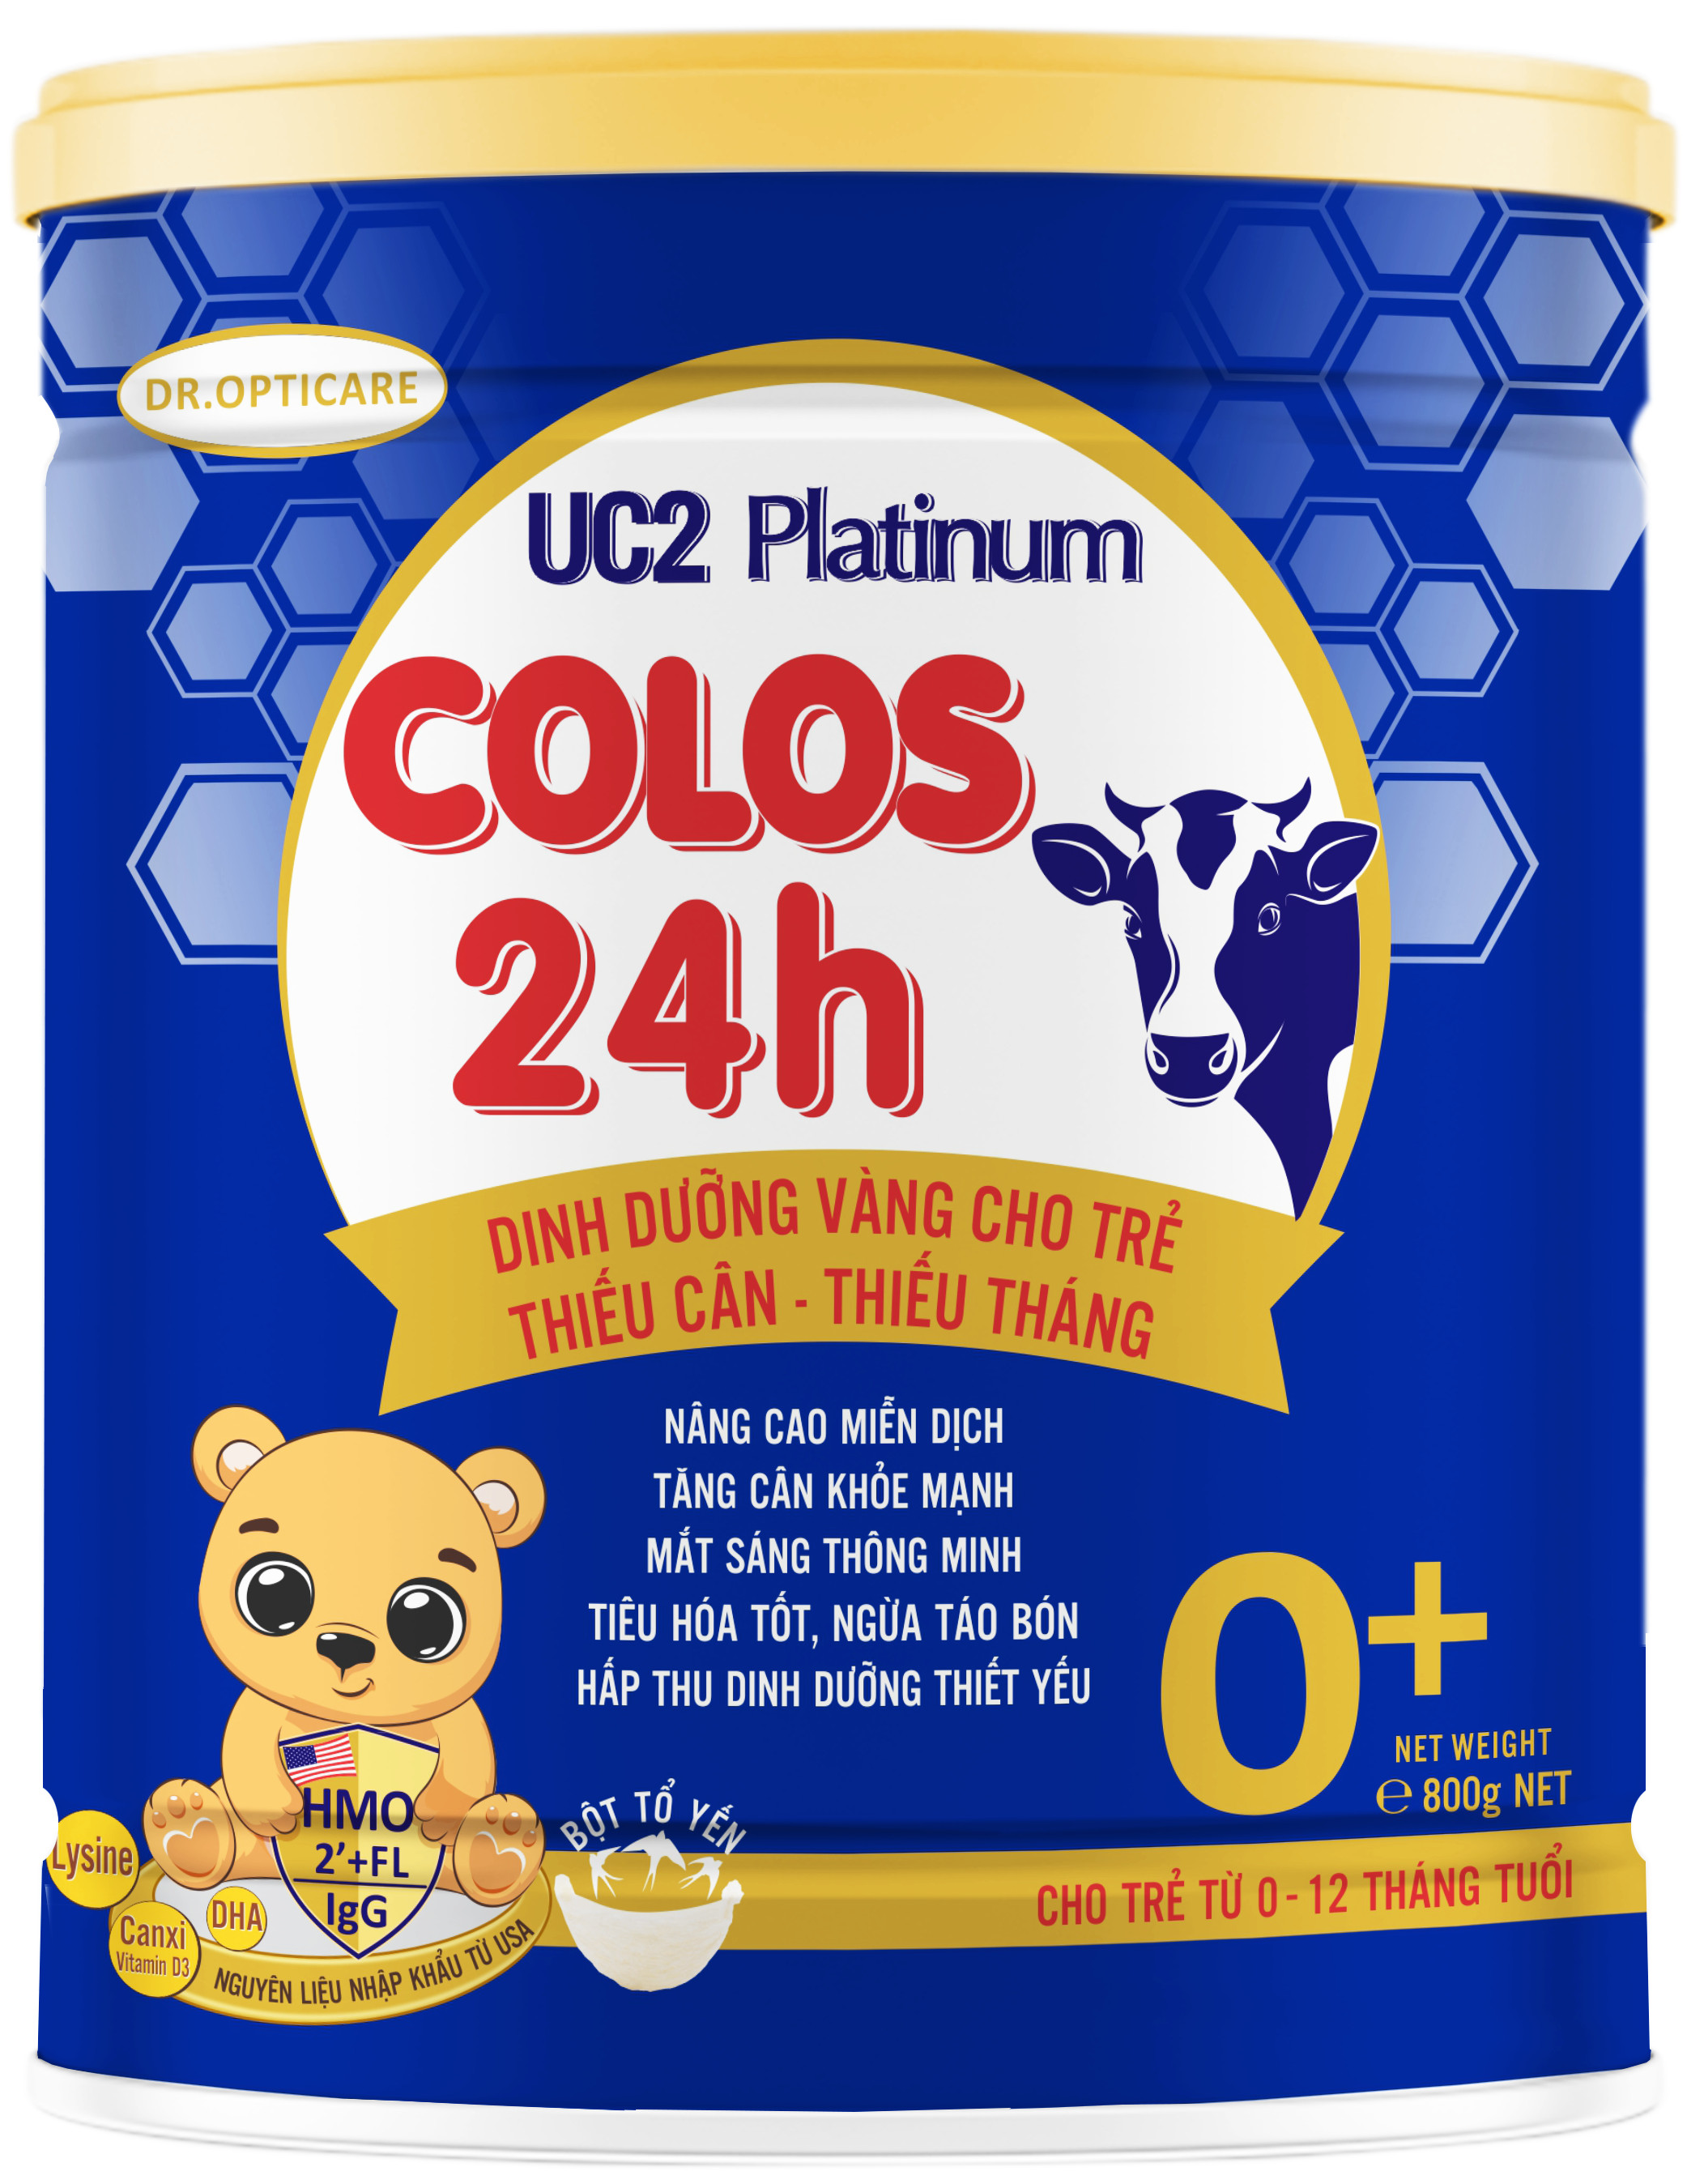 Sữa bột UC2 Colos 24h 0+ lon 800g dành cho trẻ từ 0 đến 12 tháng tuổi. Dinh dưỡng hỗ trợ bé thiếu cân thiếu tháng